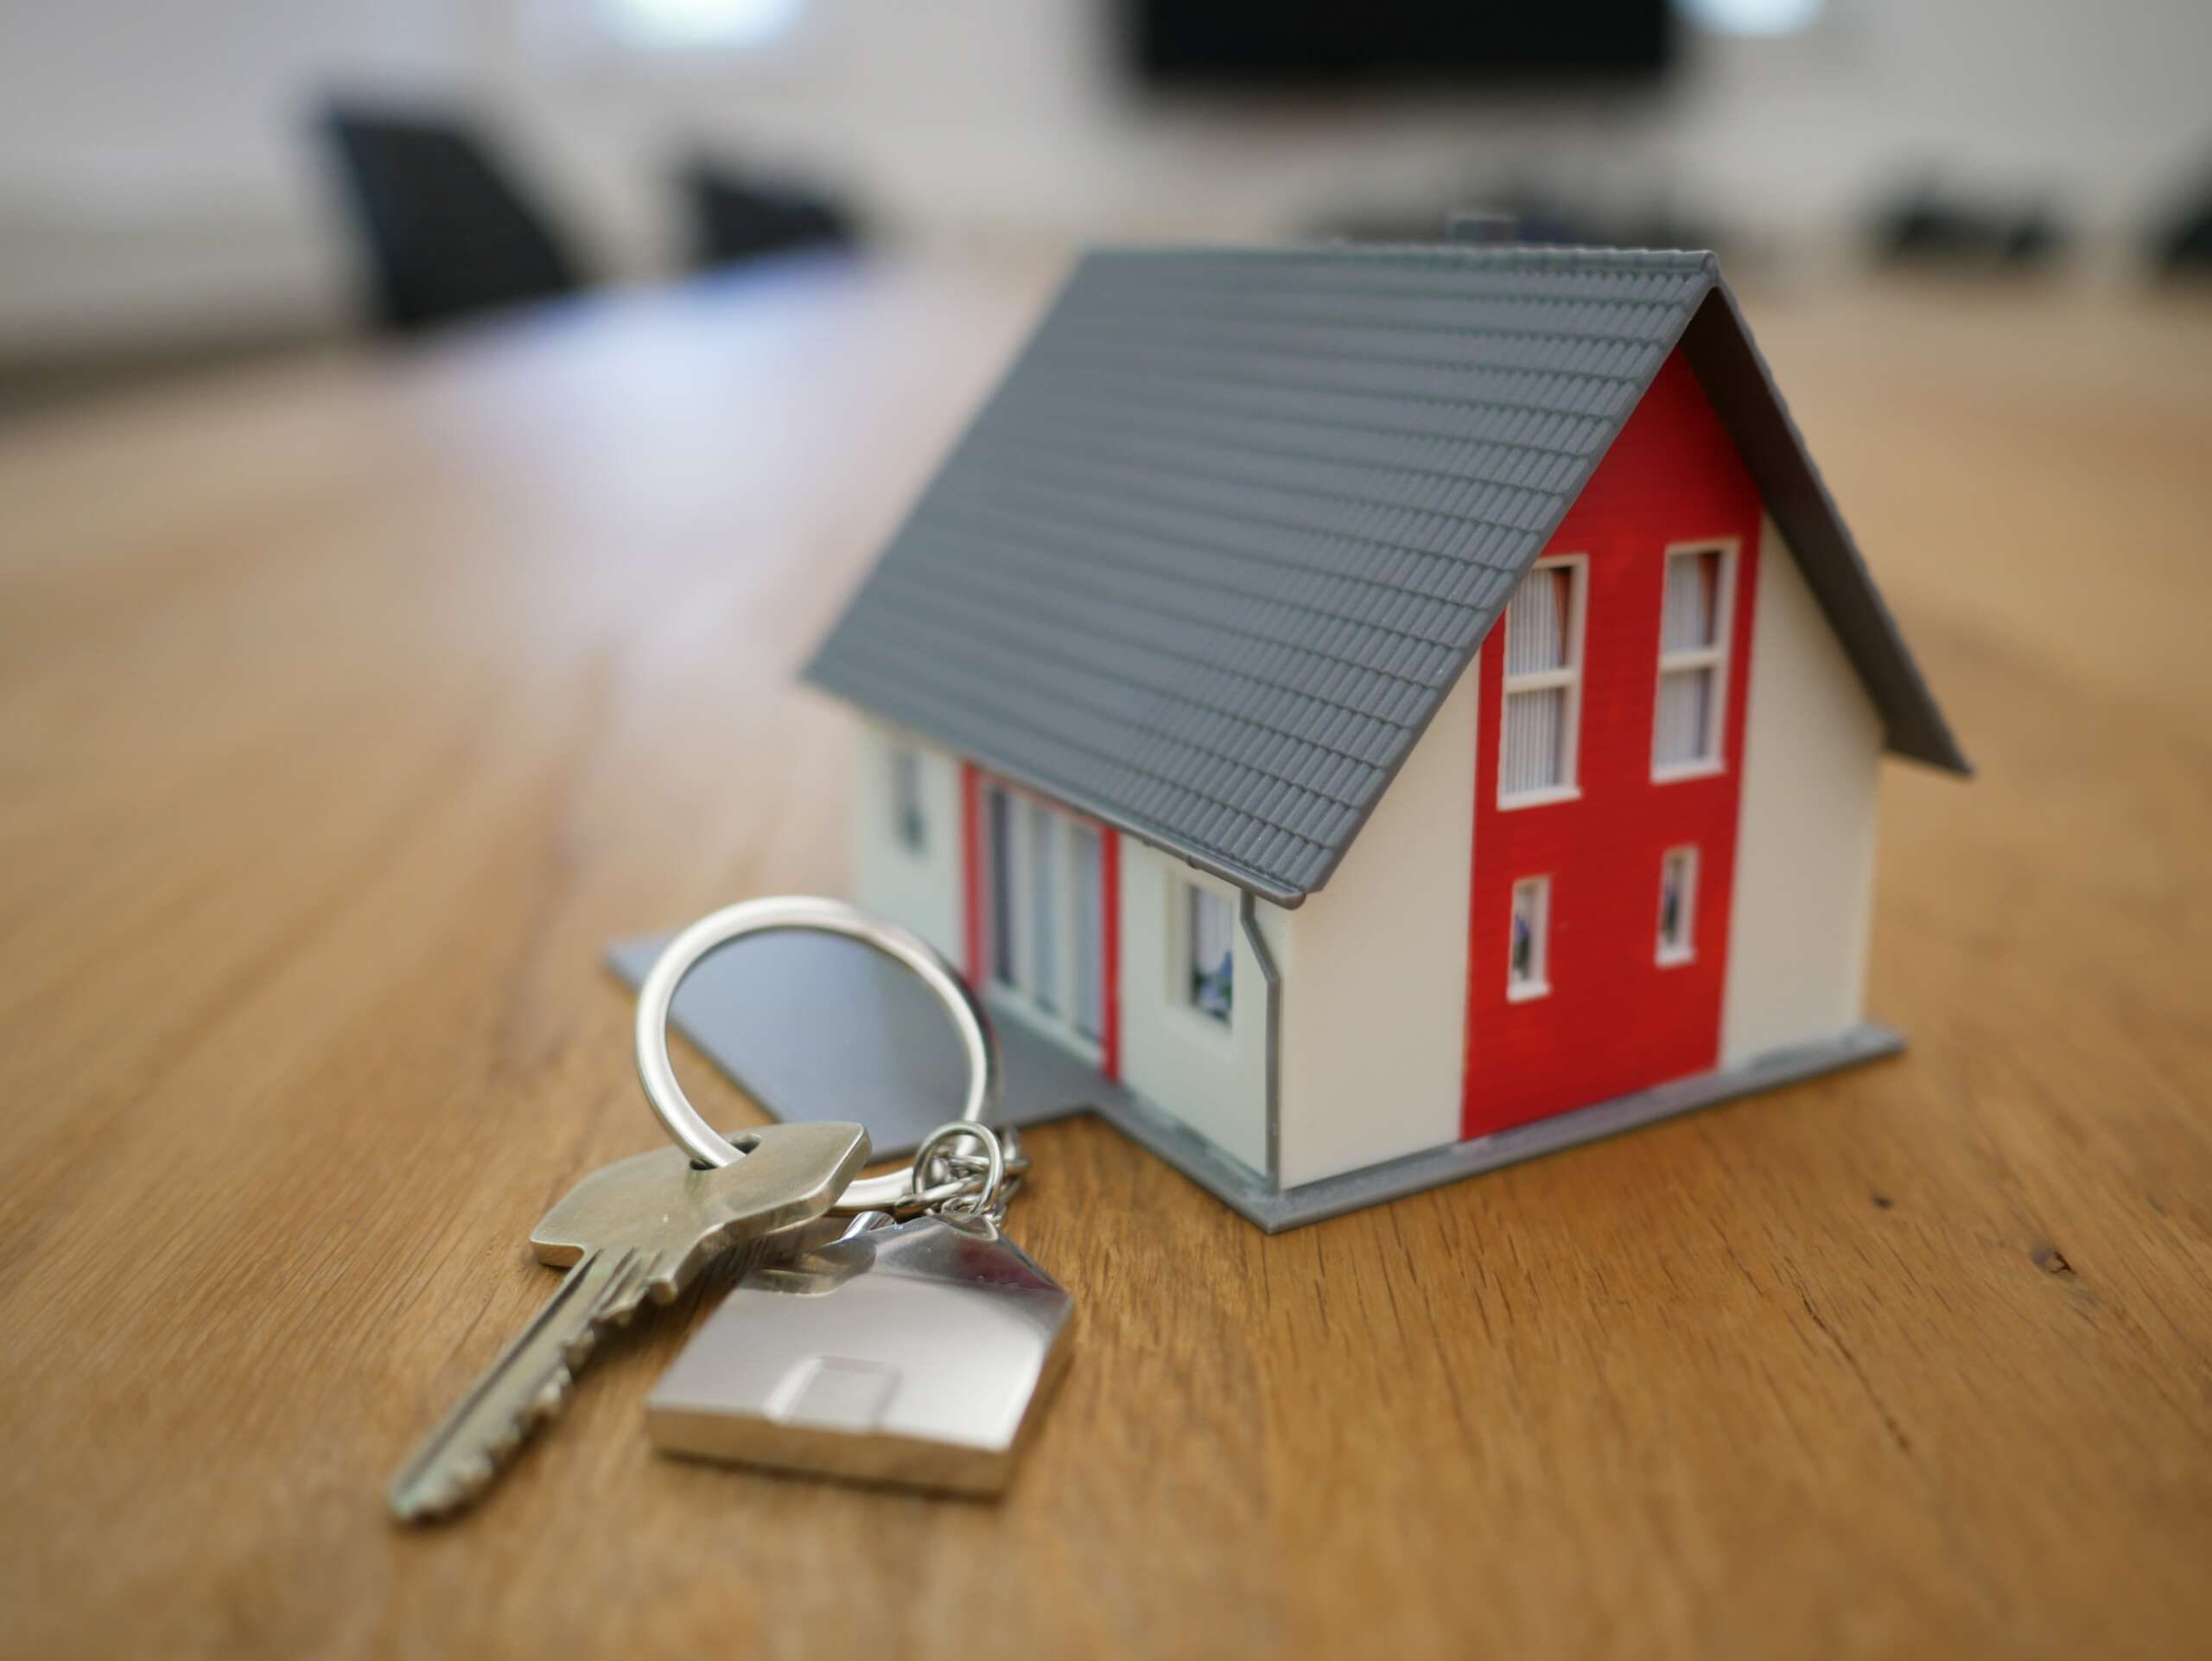 House on a keychain